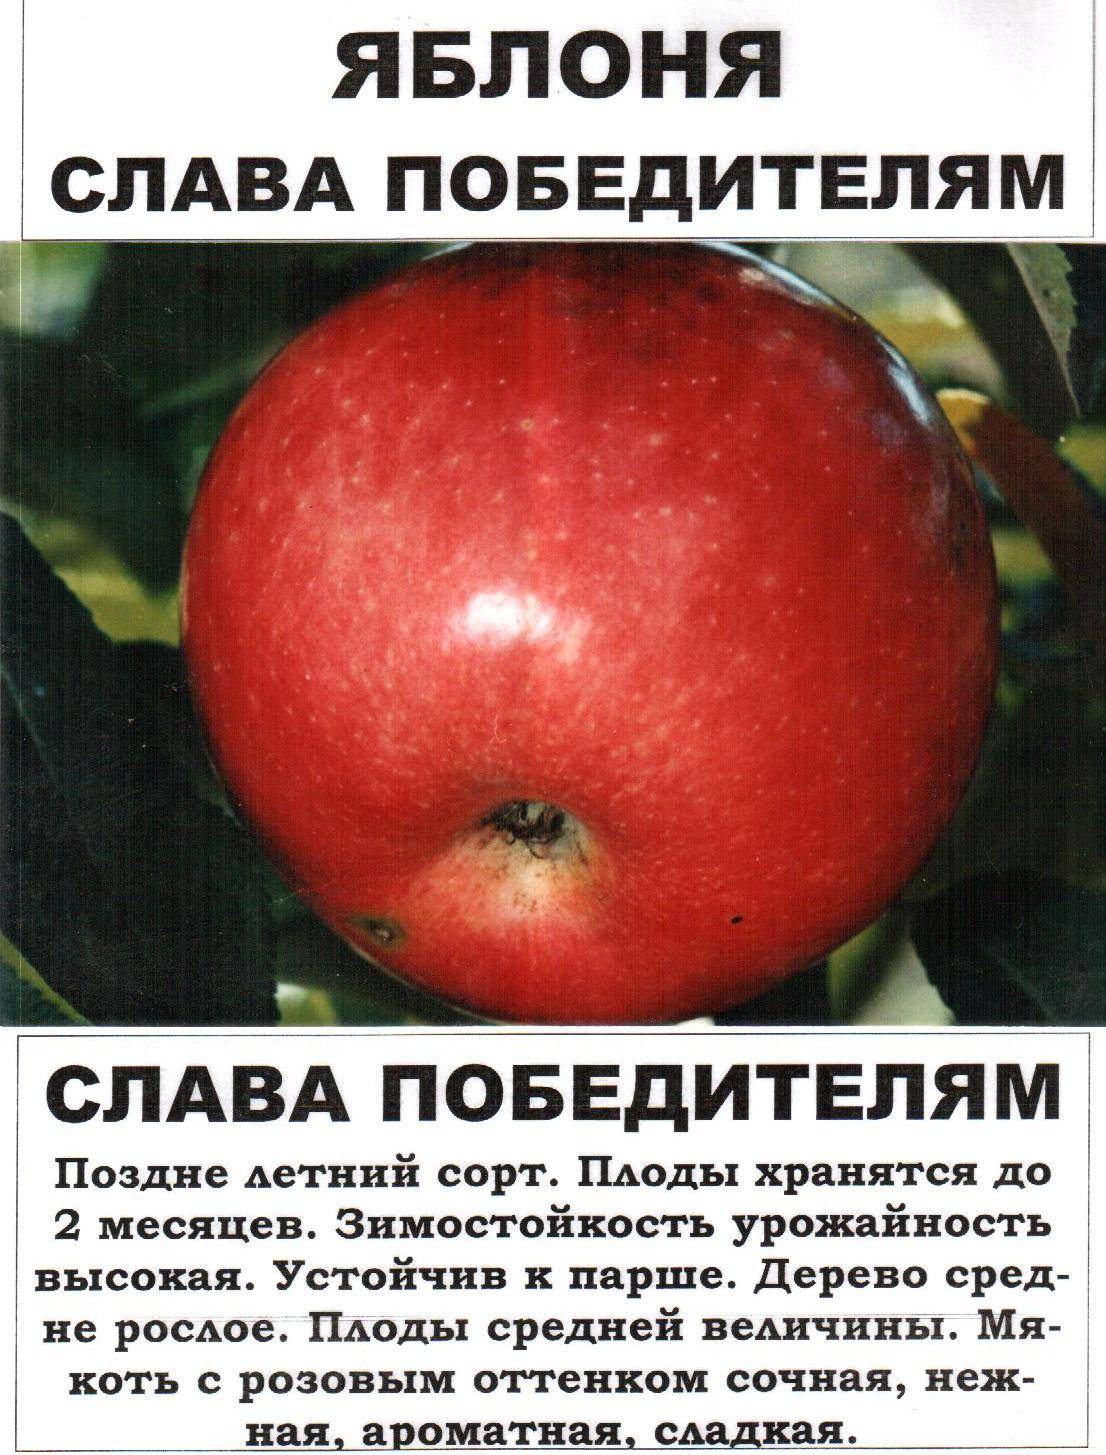 показать сорта яблок фото с названием